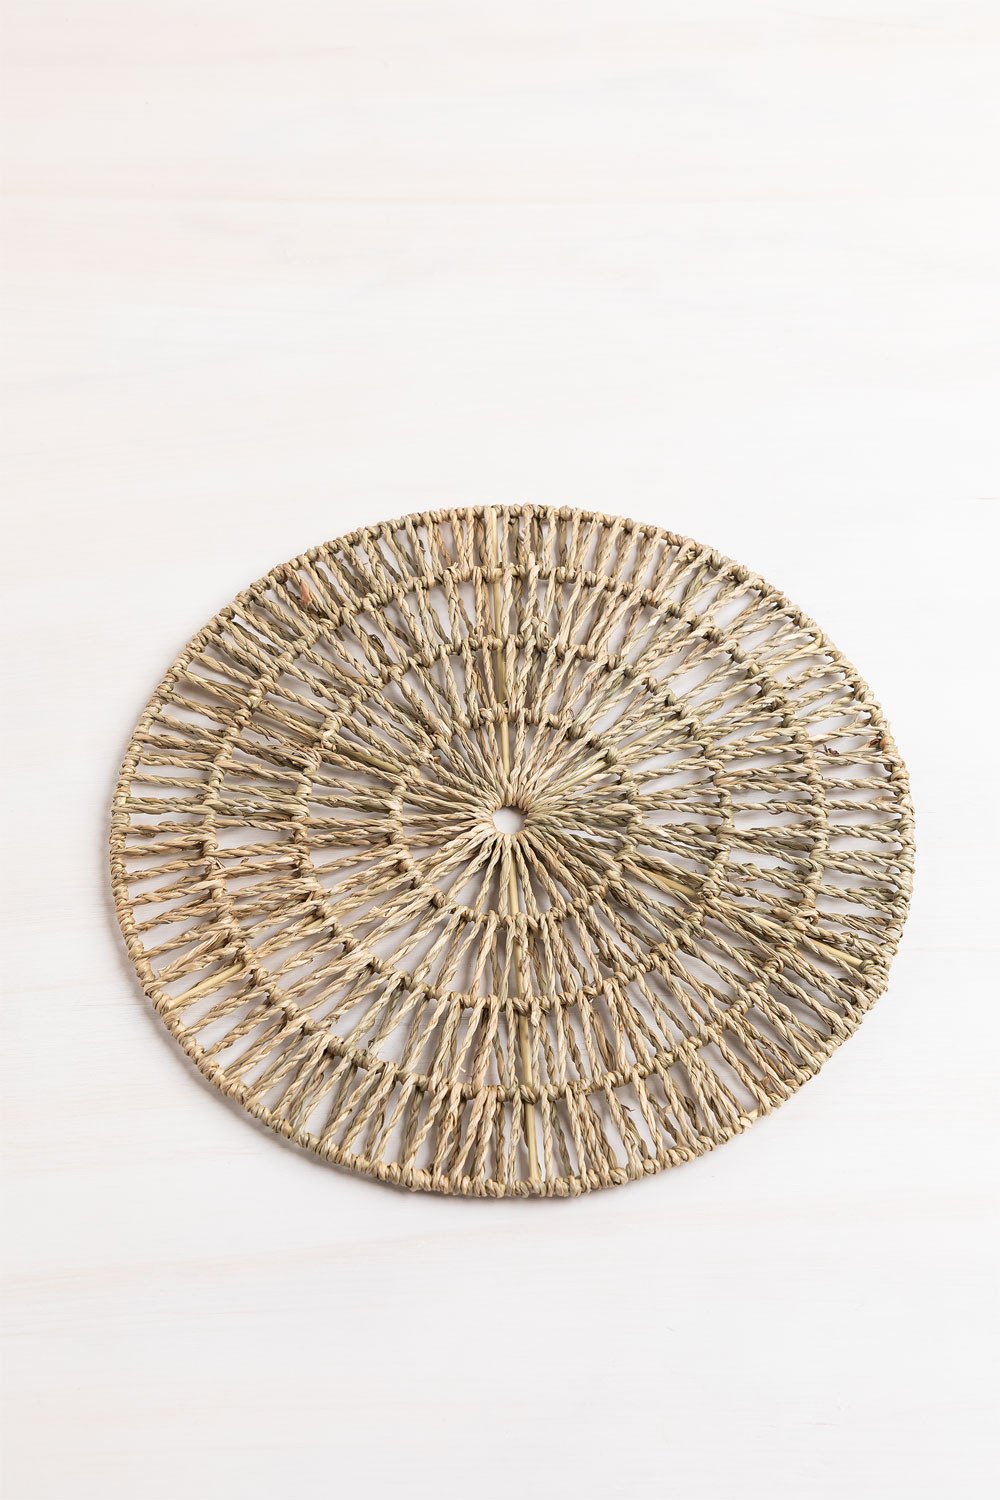 Platos decorativos de bambú para colgar en la pared, 6 pulgadas, imagen de  árbol de bambú, tema cultural tradicional chino, plato redondo con soporte